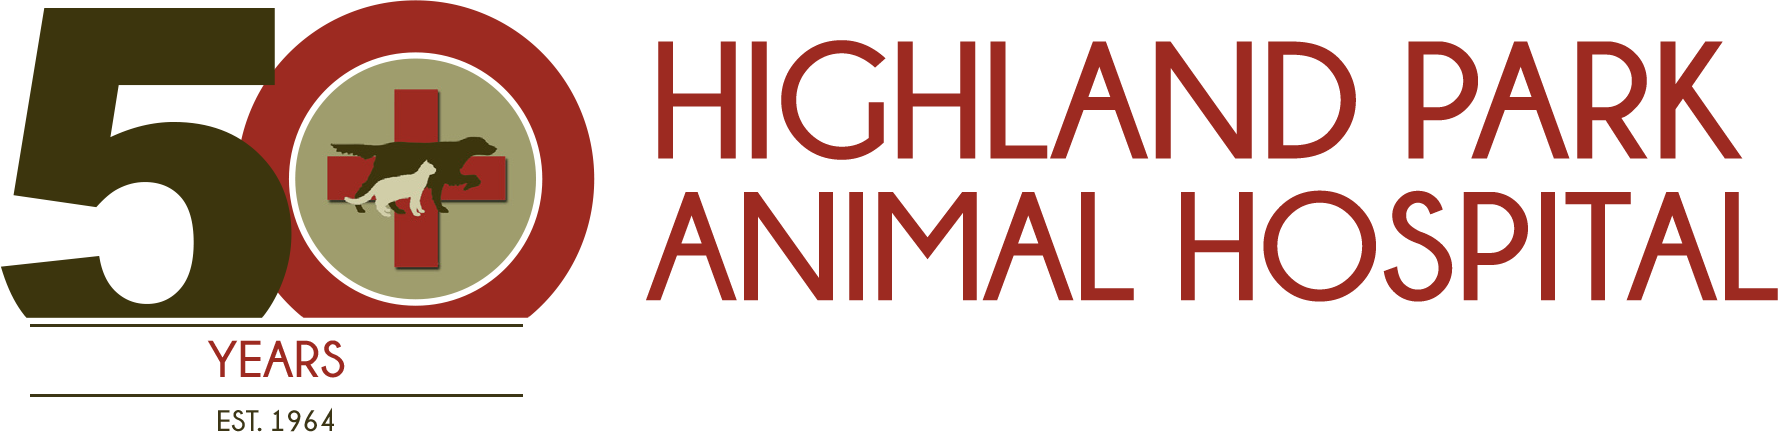 Hpah 50th Logo Transp Header Large - Highland Park Animal Hospital (1778x432), Png Download